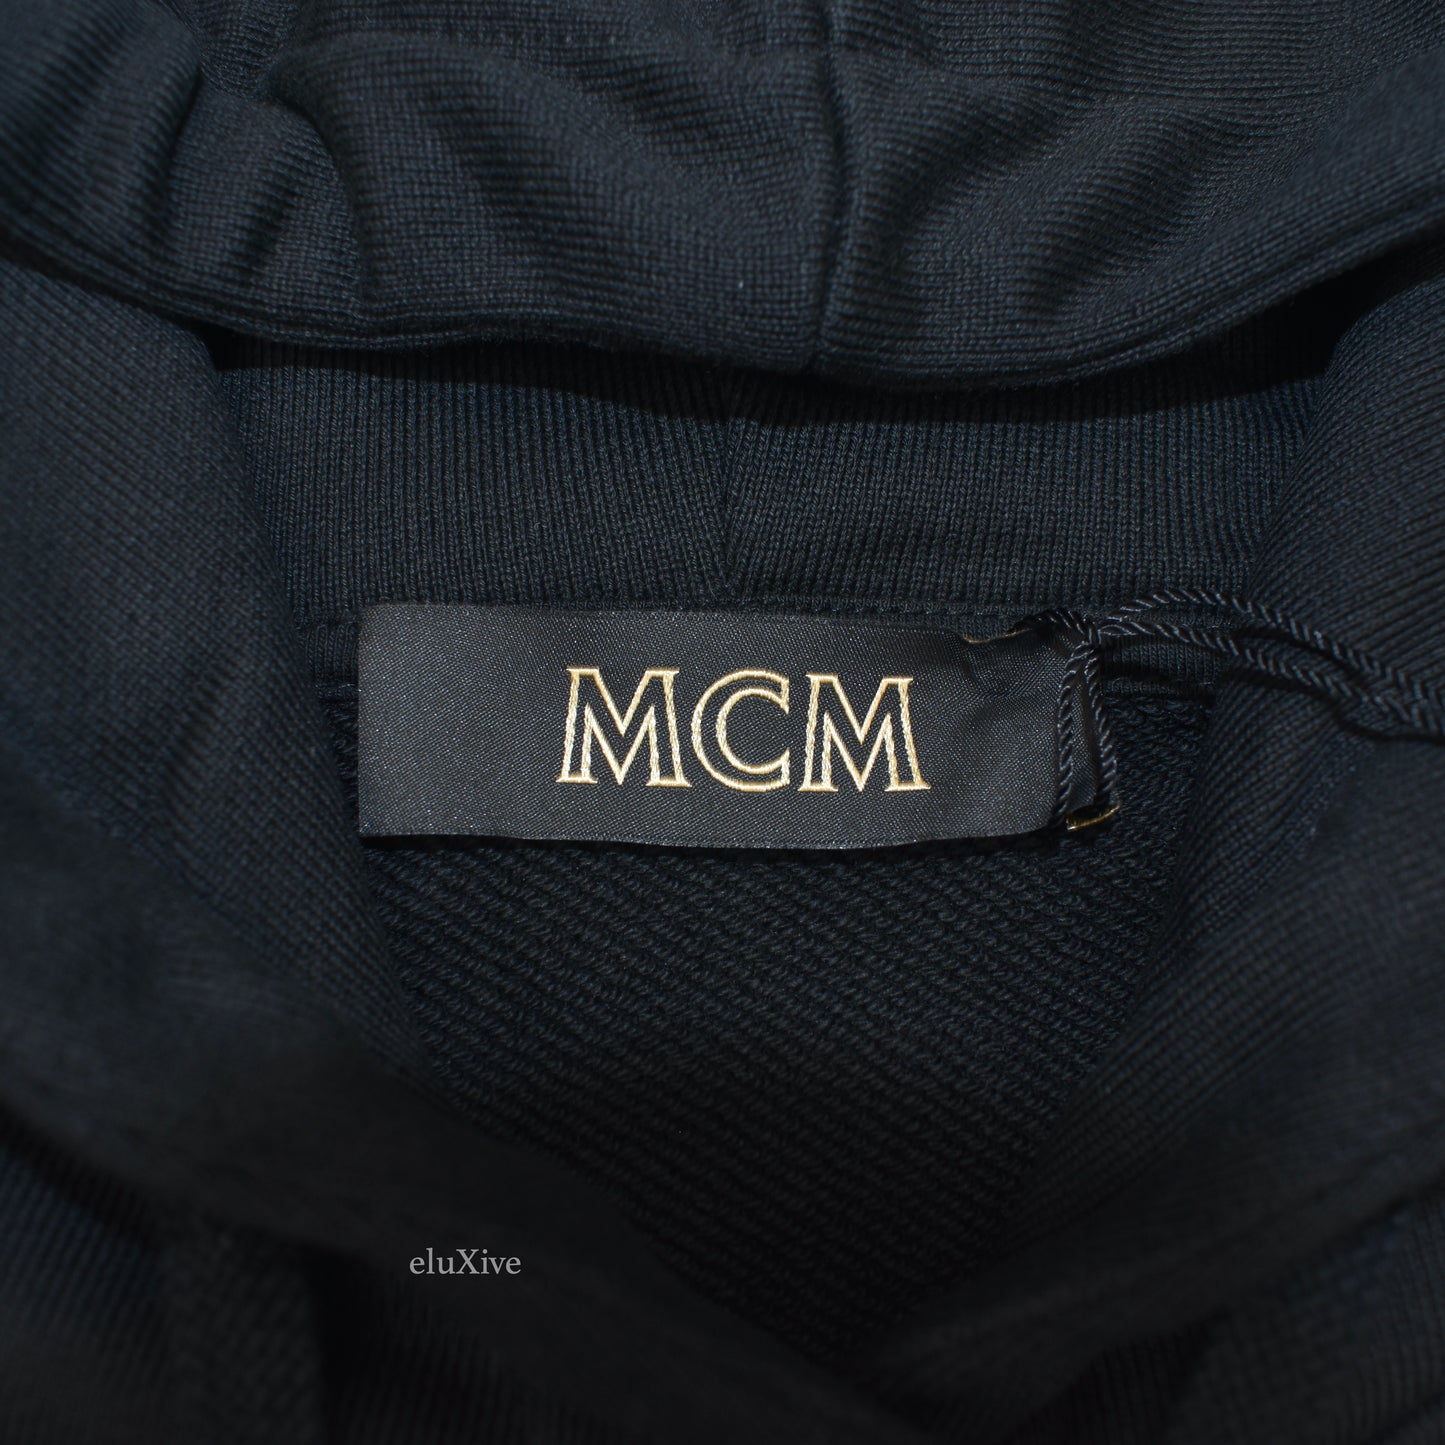 MCM - Black Logo Embroidered Hoodie